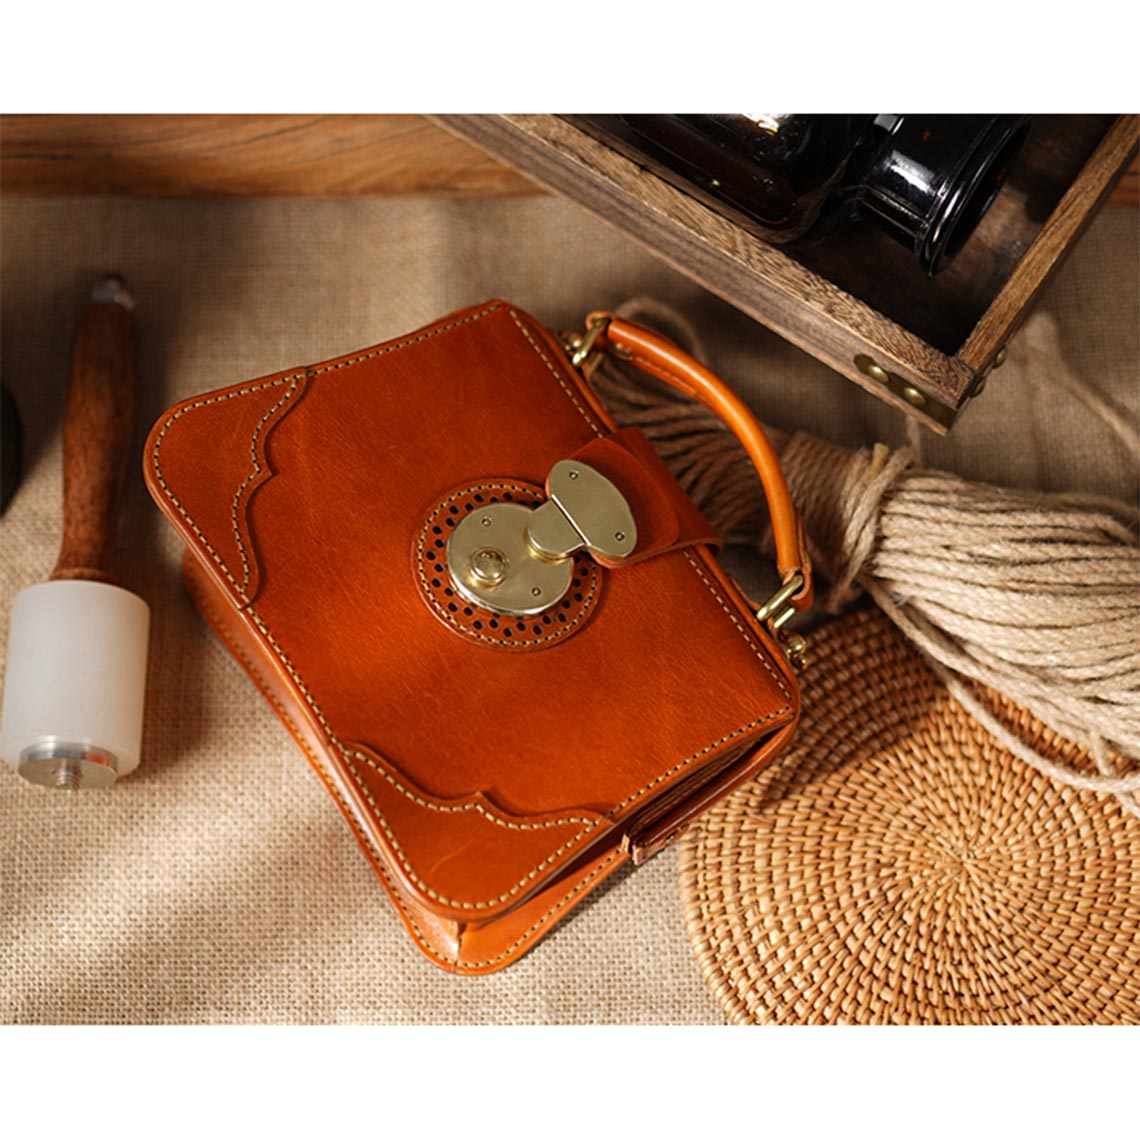 Tan Vintage Style Handbag for Women | Doctor Bag DIY Kits - POPSEWING 